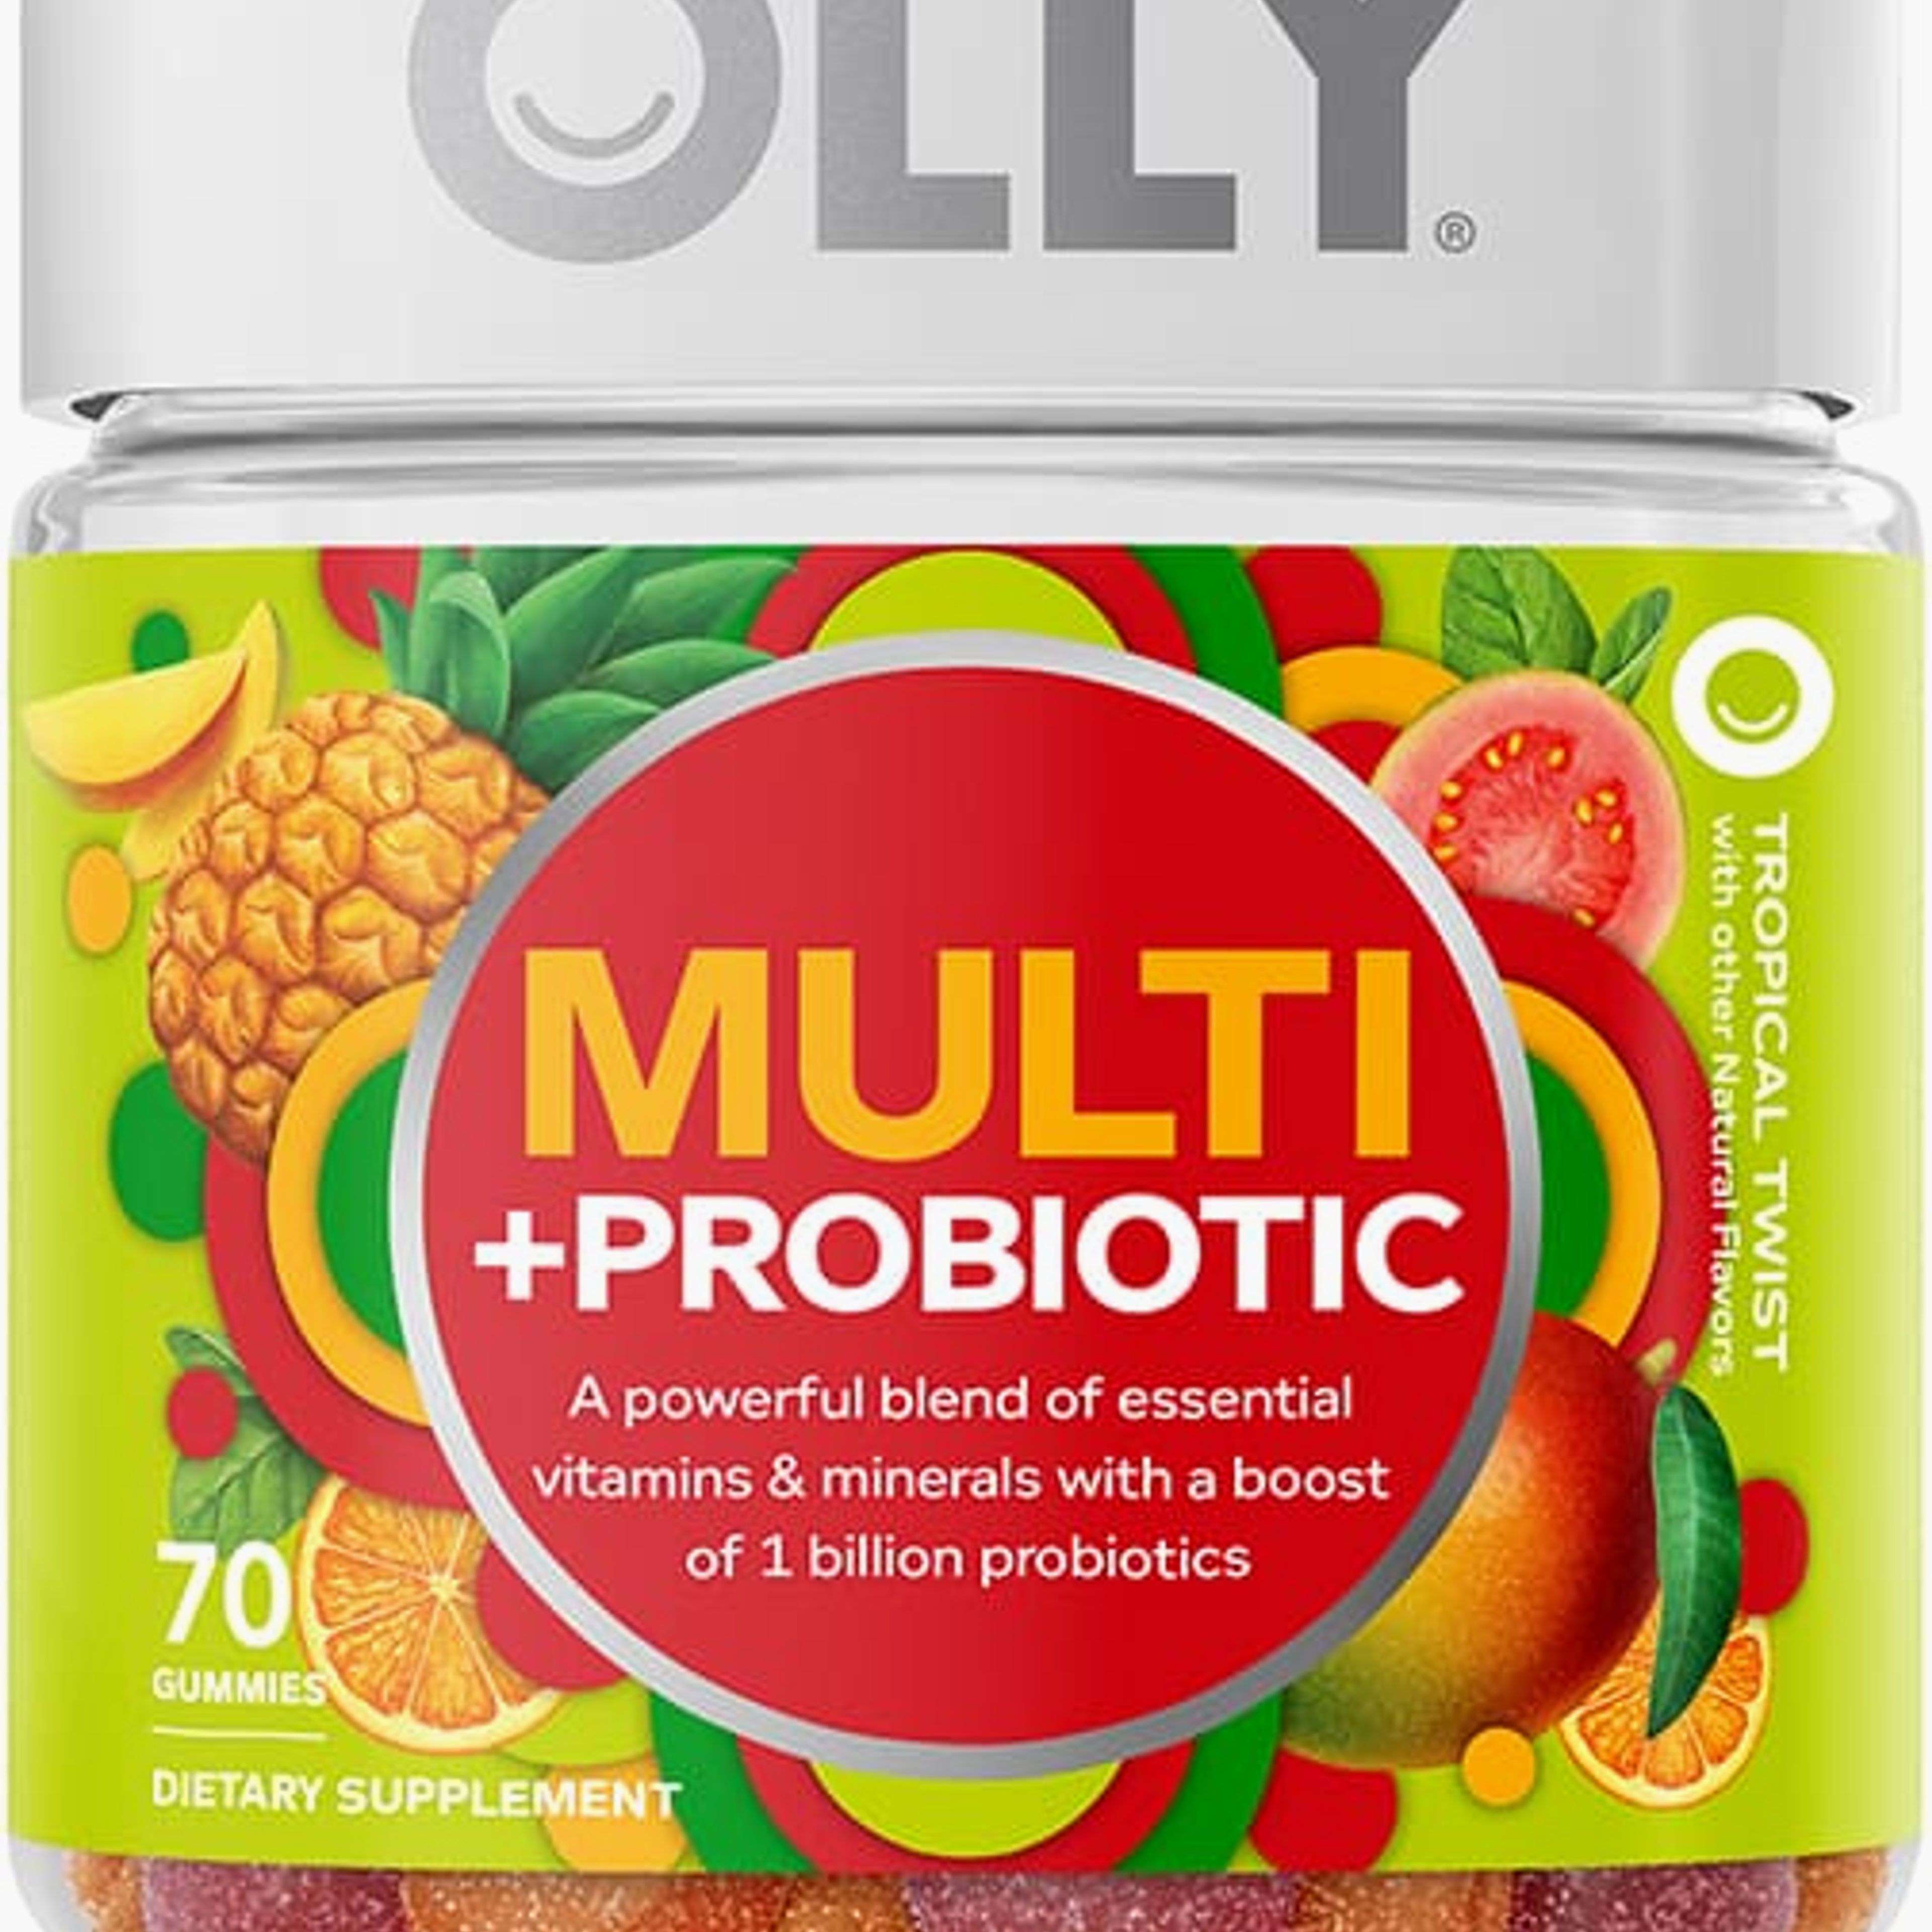 Adult Multi & Probiotic Vitamins